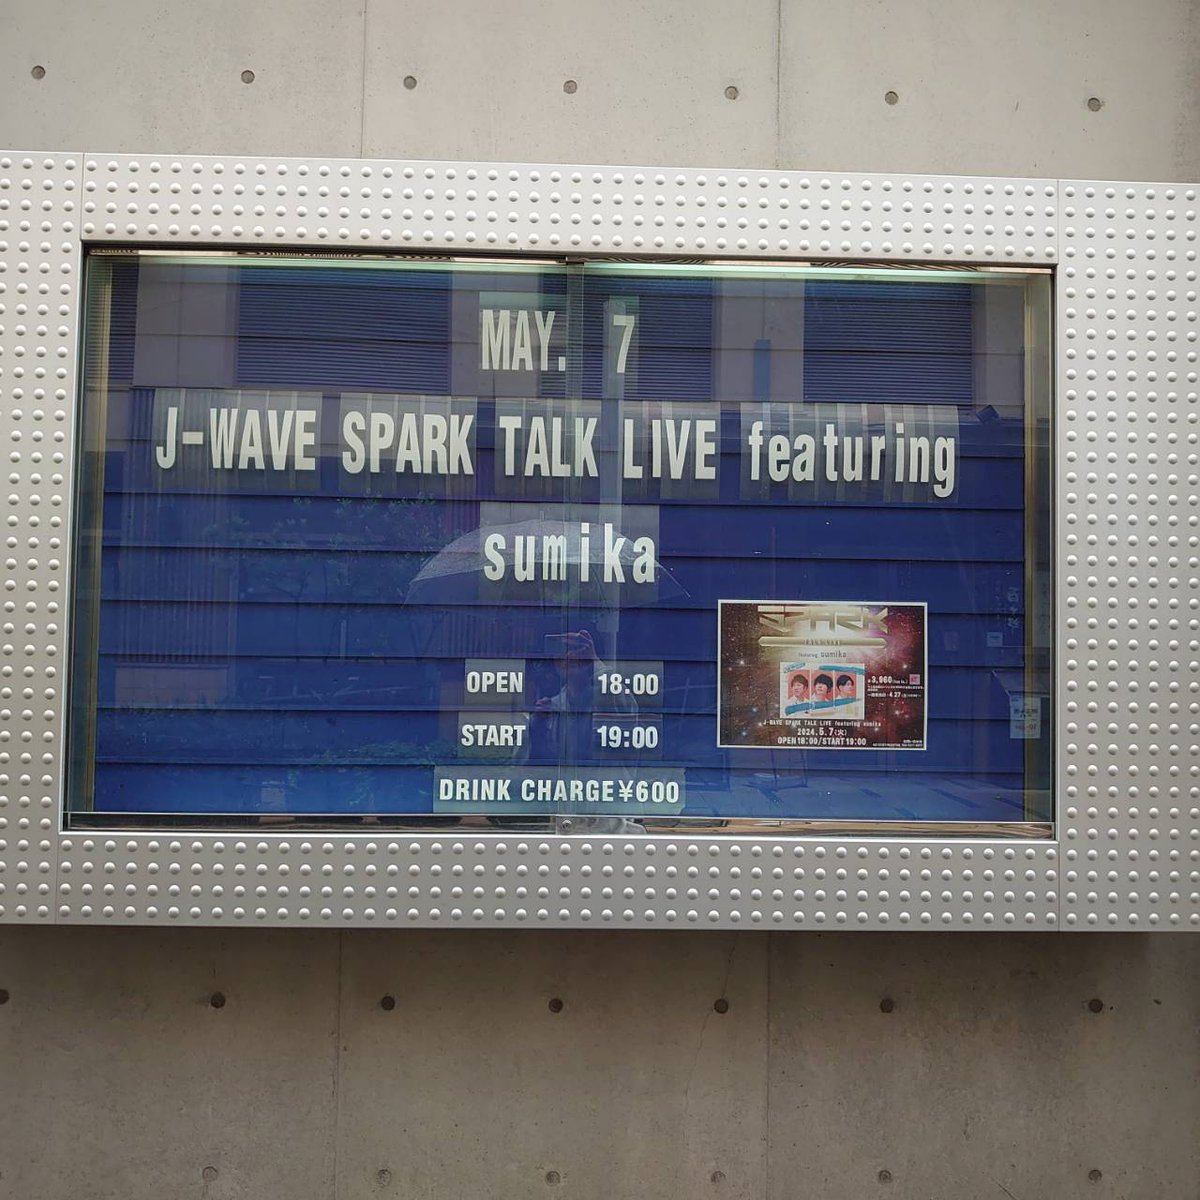 おはようございます！ 本日はこちら ■5/7(火) J-WAVE SPARK TALK LIVE featuring sumika OPEN 18:00 / START 19:00 🎫THANK YOU SOLD OUT！！！ 先行グッズ販売 16:30～17:30予定 ご来場お待ちしております。 #sp813 #jwave #sumika #クラブチッタ #clubcitta